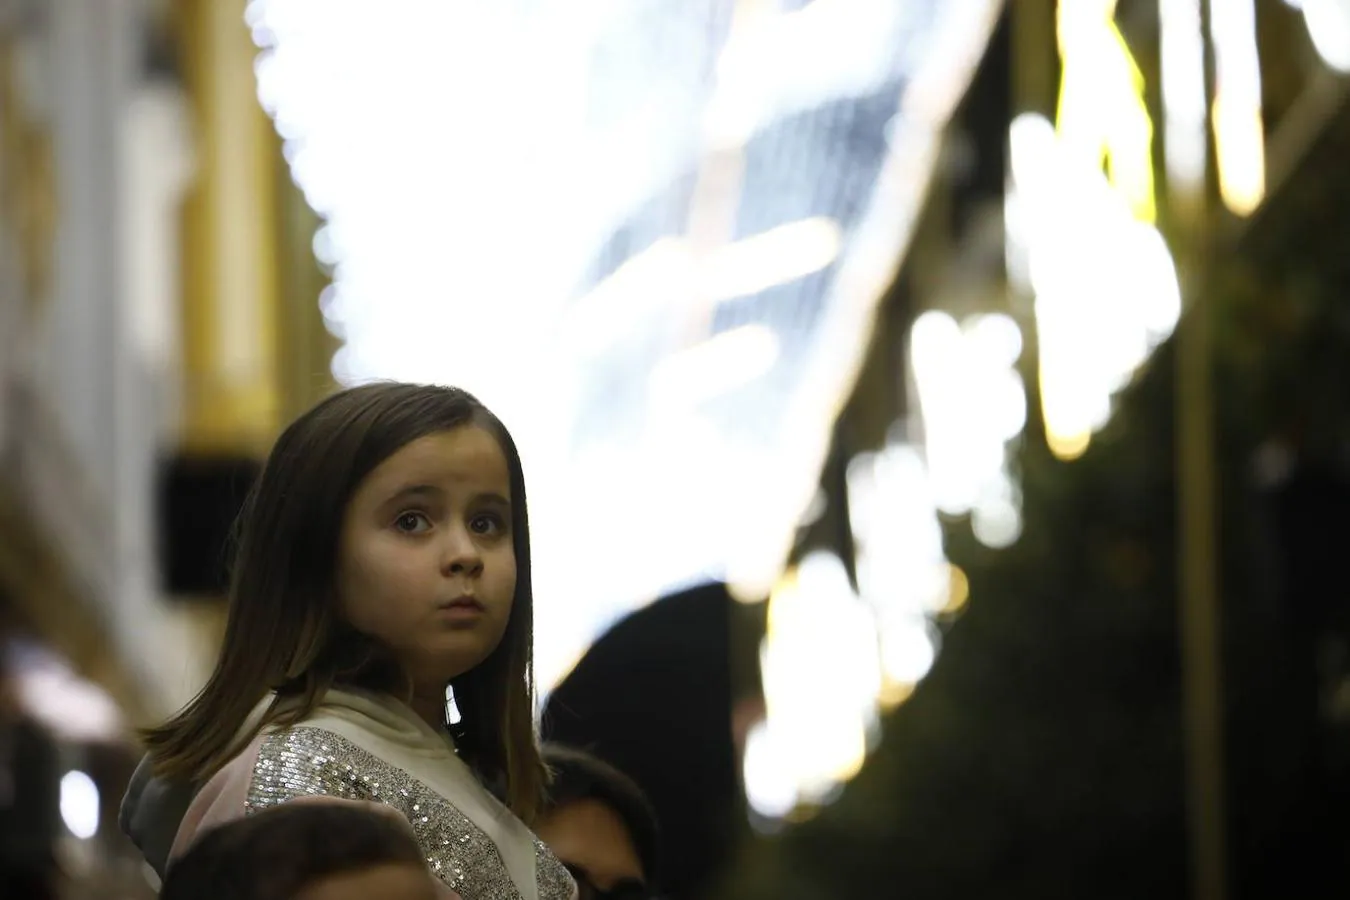 El ambiente navideño del viernes del puente en Córdoba, en imágenes